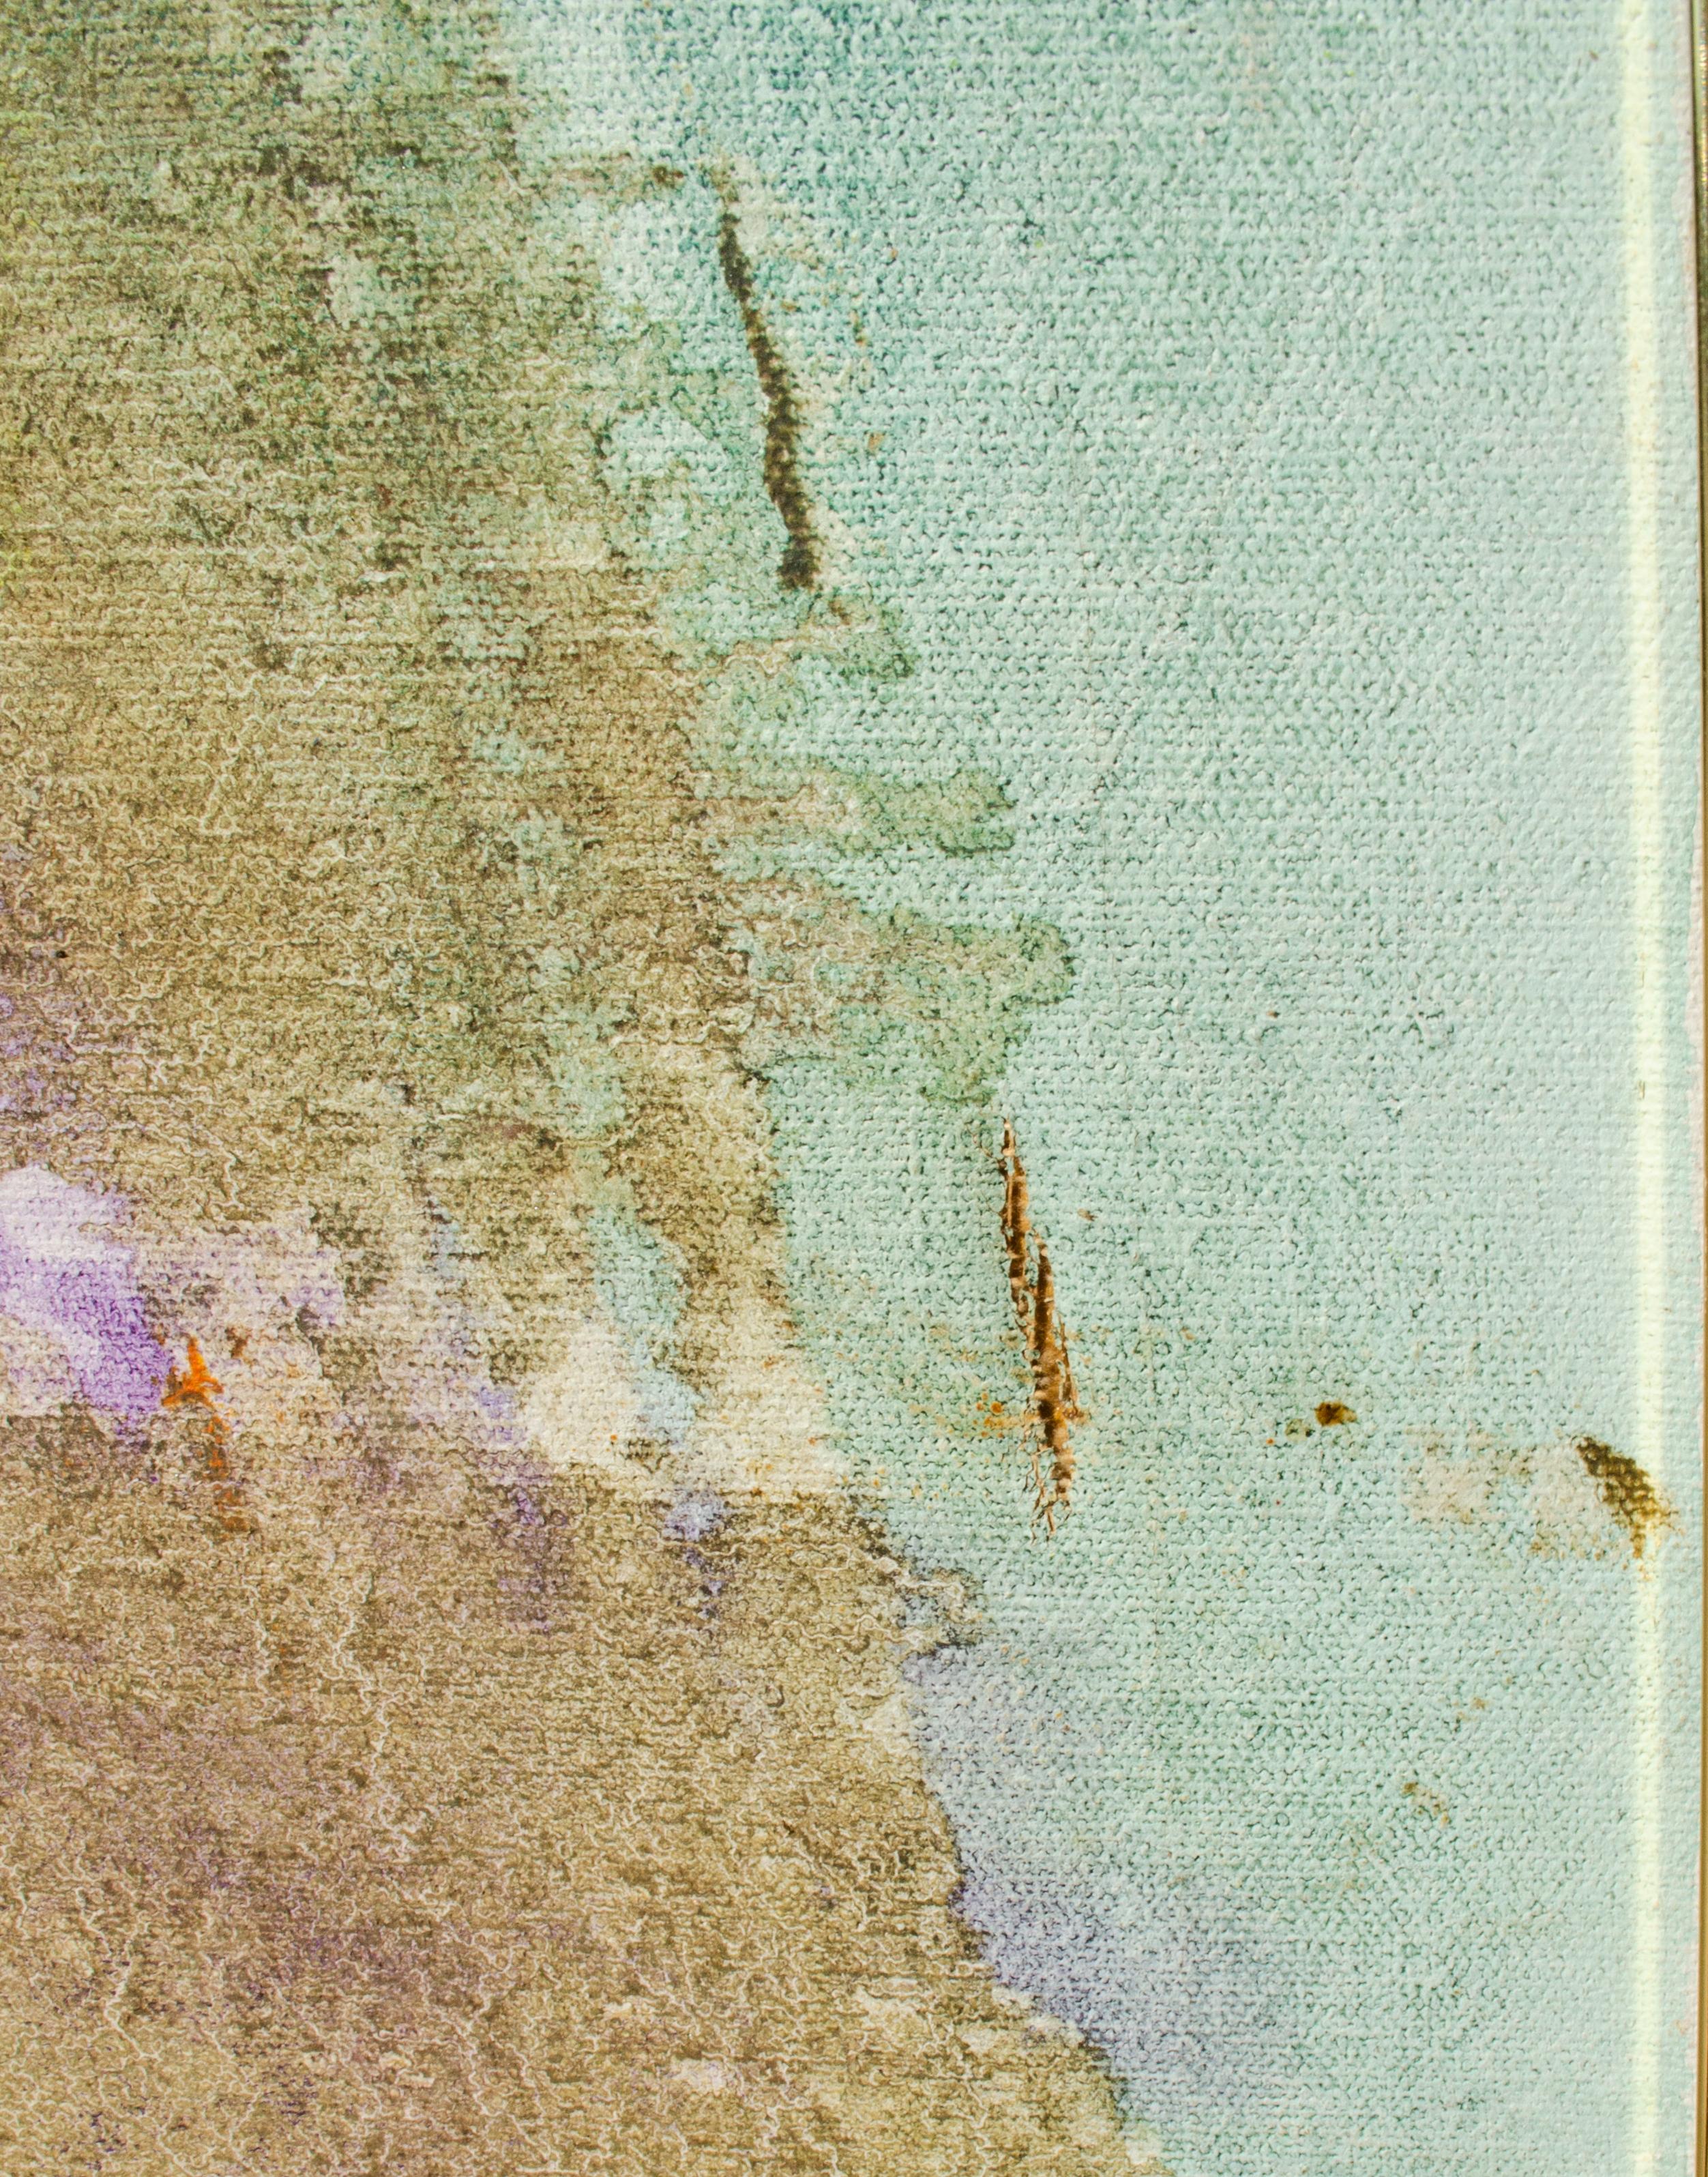 Sloyer
Sans titre, 1976
Huile sur toile
36 1/4 x 24 x 1 3/8 in.
Label de l'artiste au verso (texte légèrement obscurci)
Signé sur le châssis